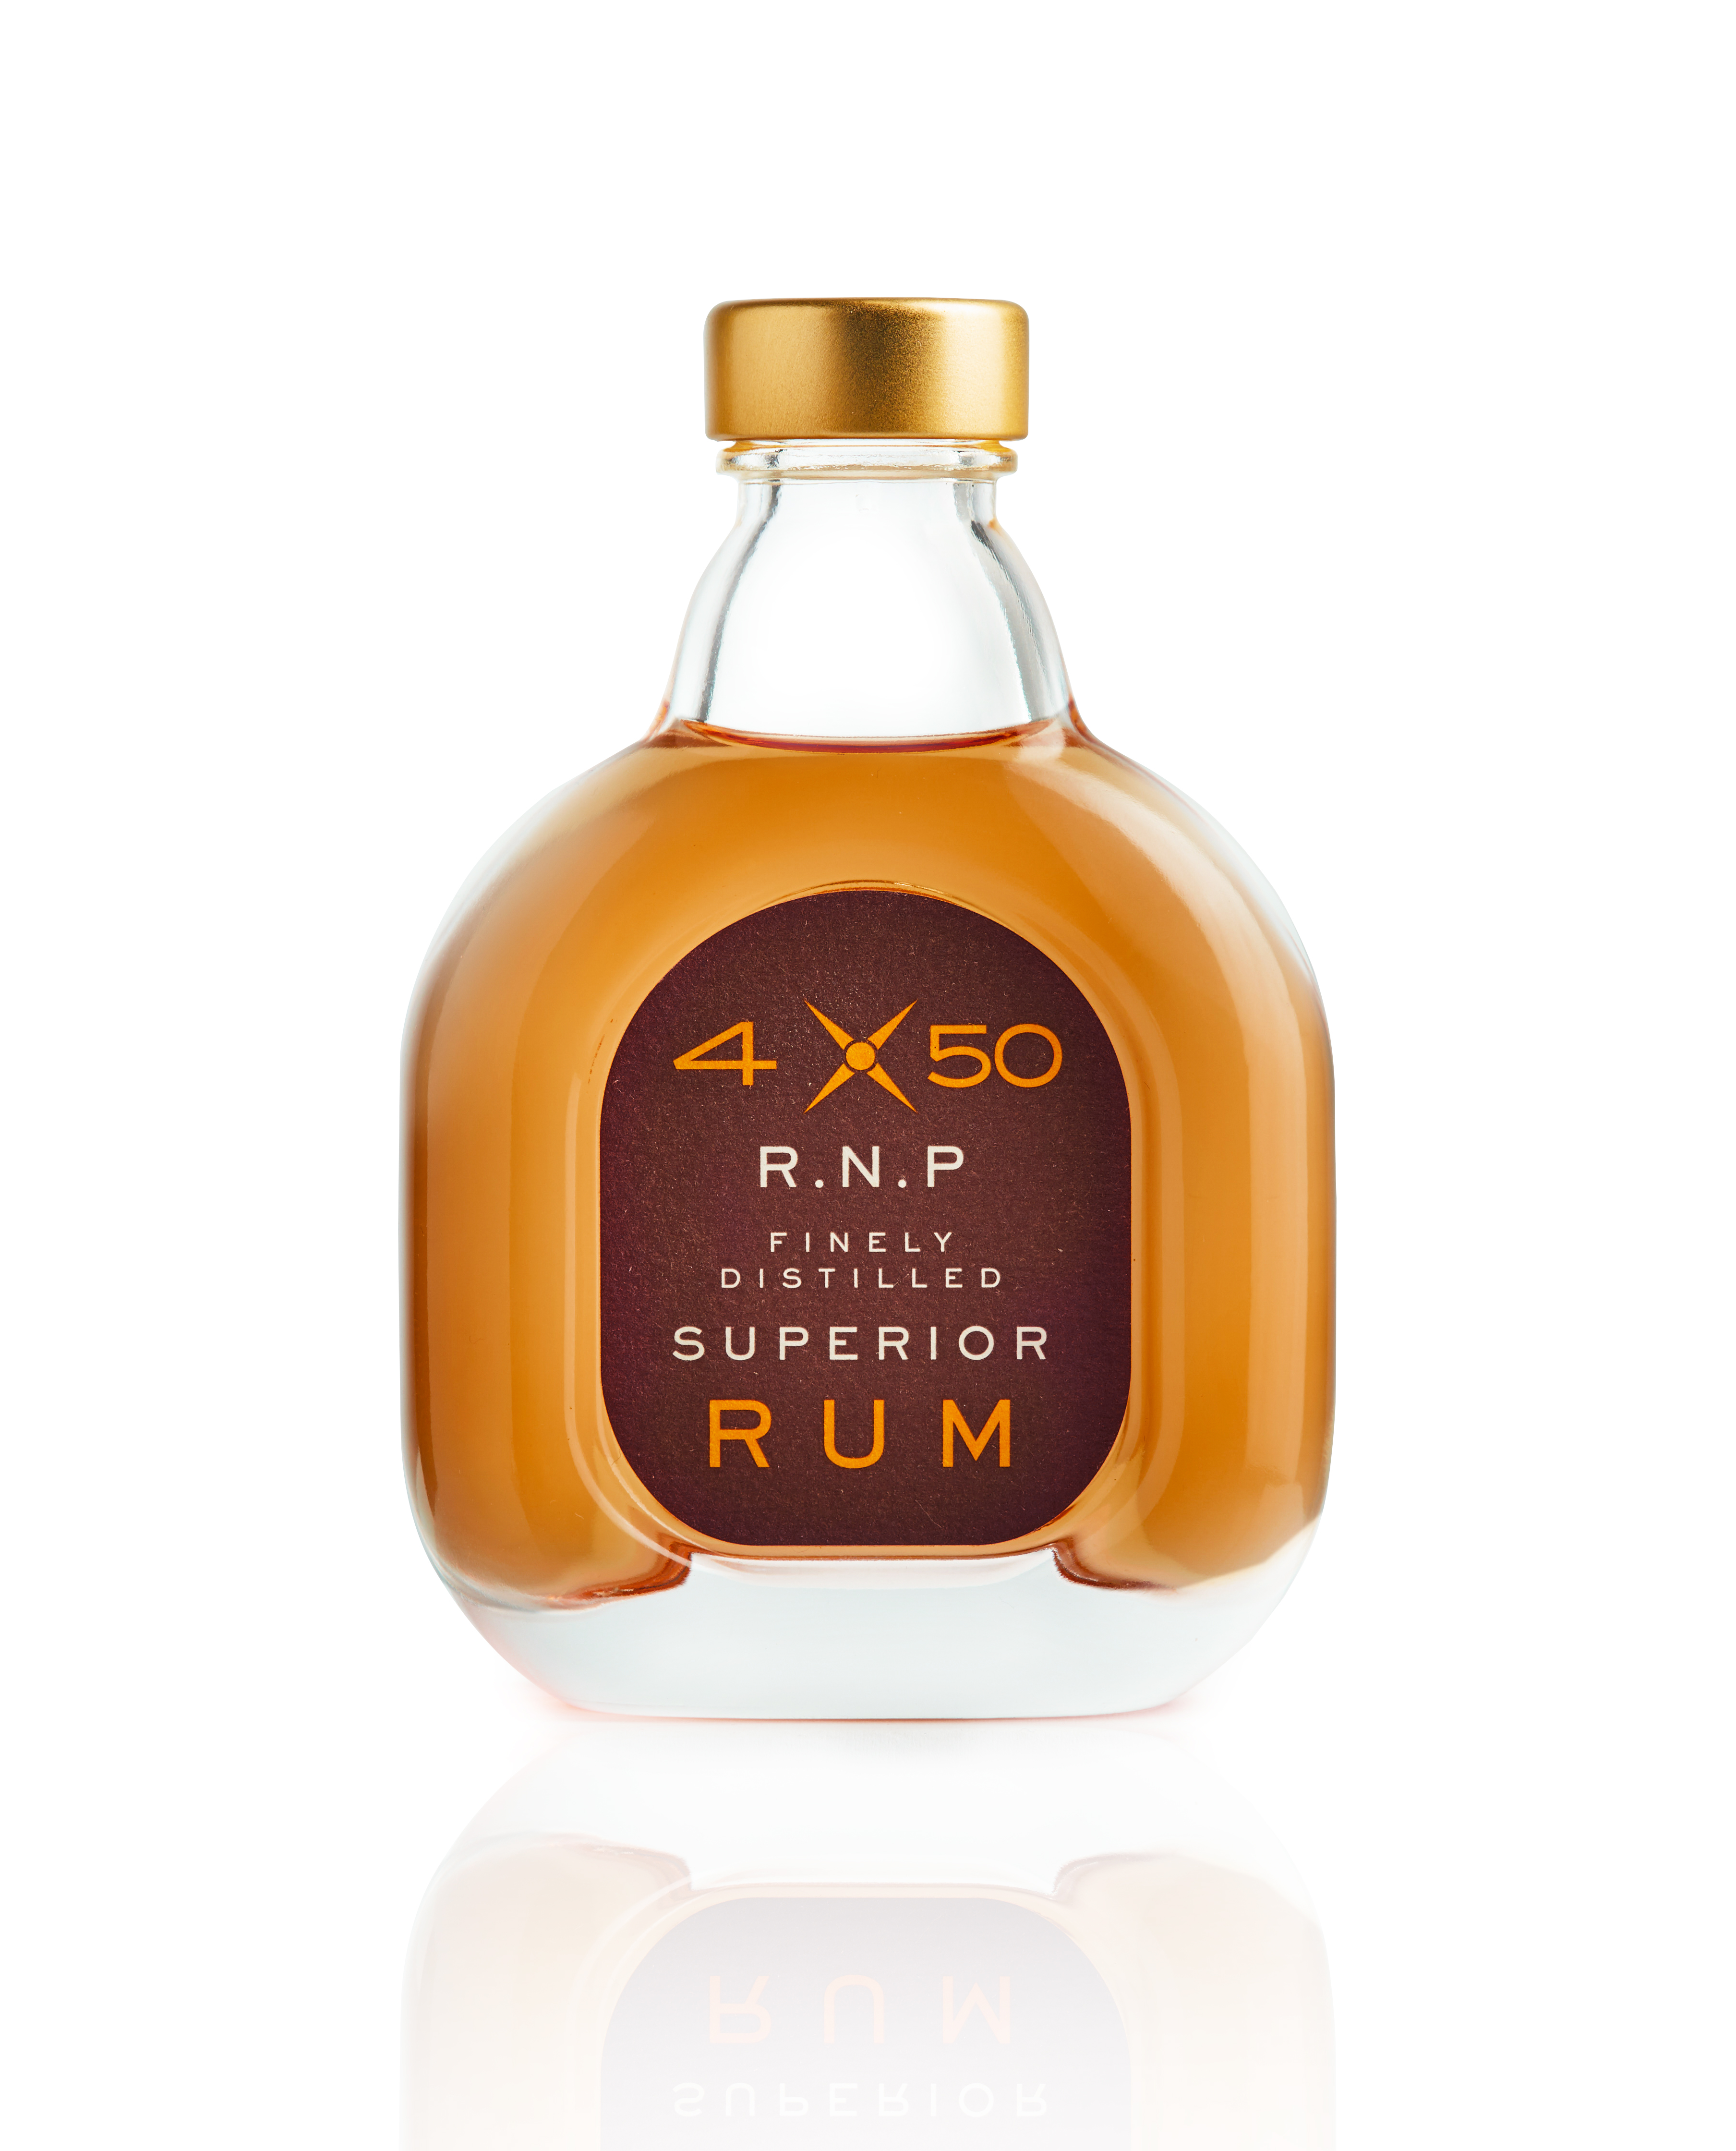 4X50 Finely Distilled Superior Rum by Reisetbauer 40,5%vol.